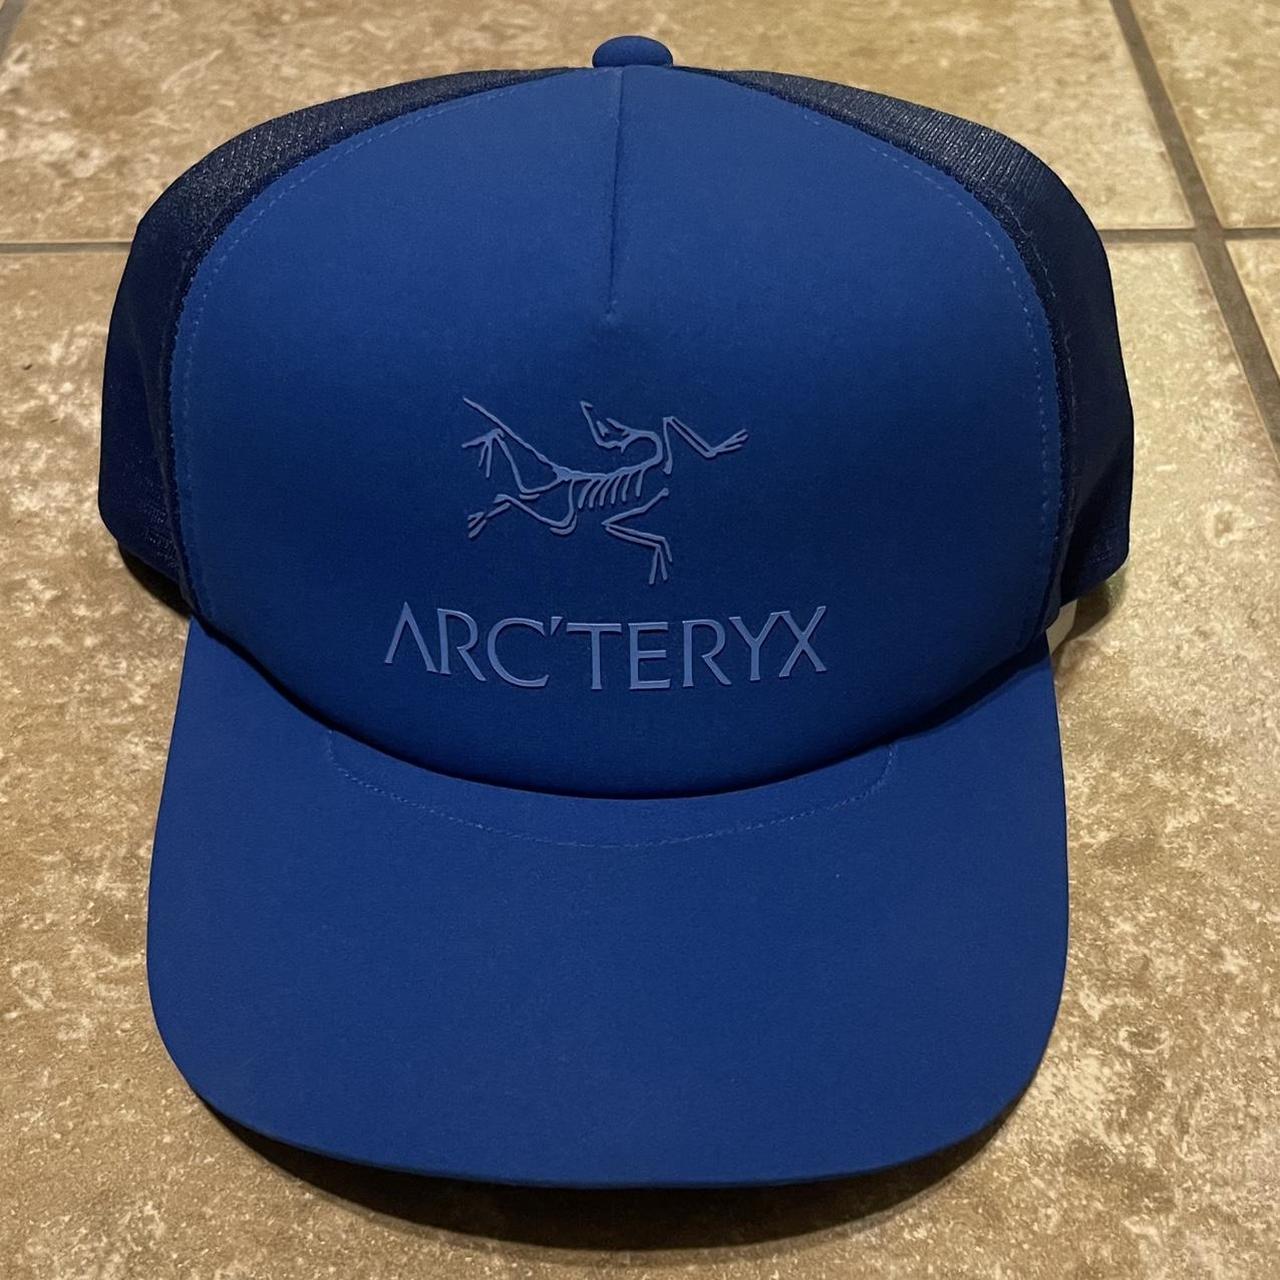 Arc'teryx Men's Caps - Blue